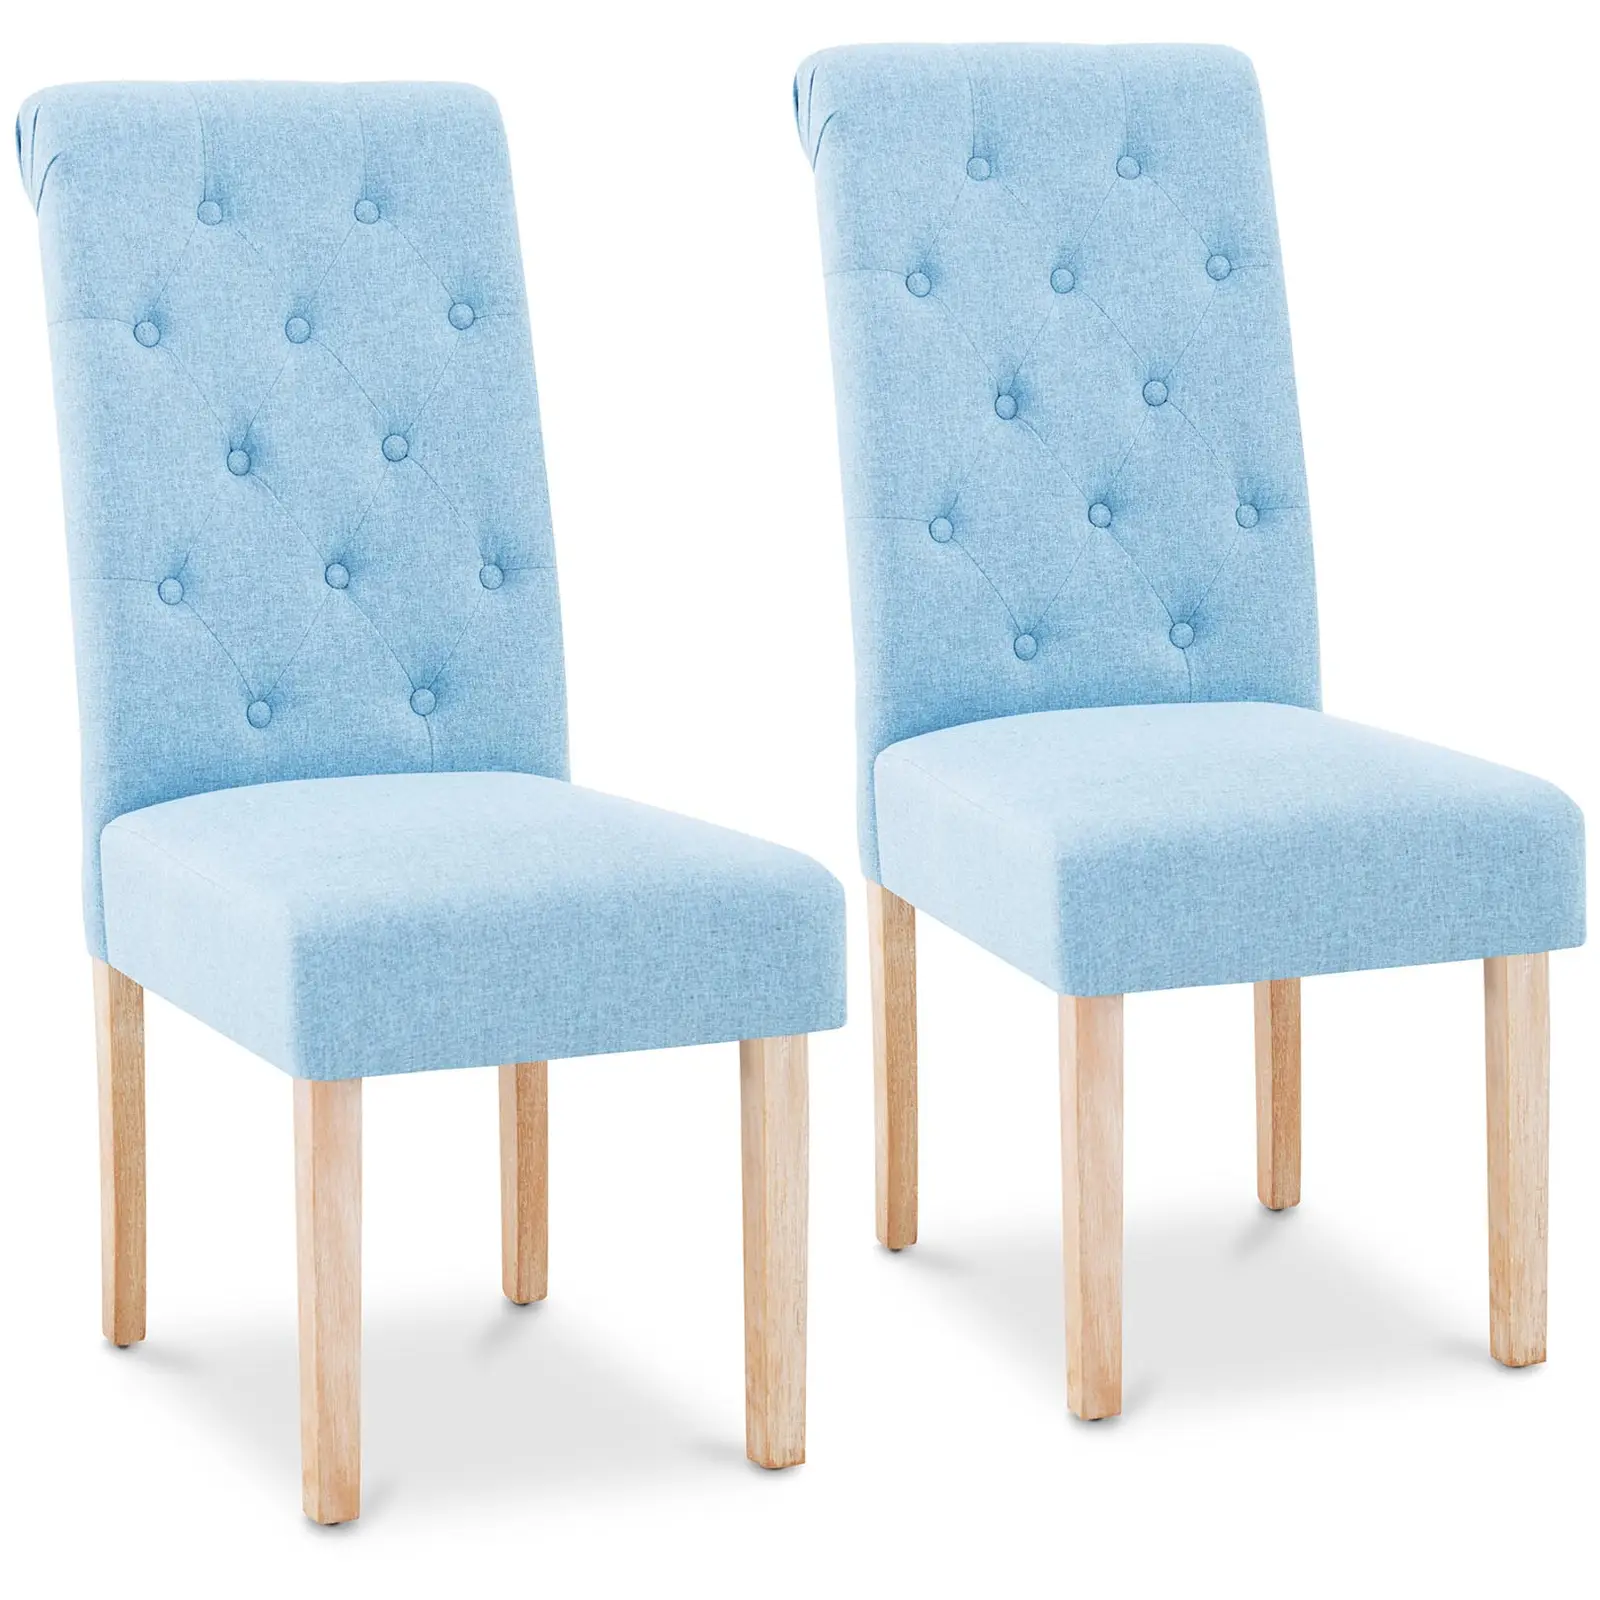 Επενδυμένη καρέκλα - σετ 2 - έως 180 κιλά - κάθισμα 46 x 42 cm - μπλε του ουρανού